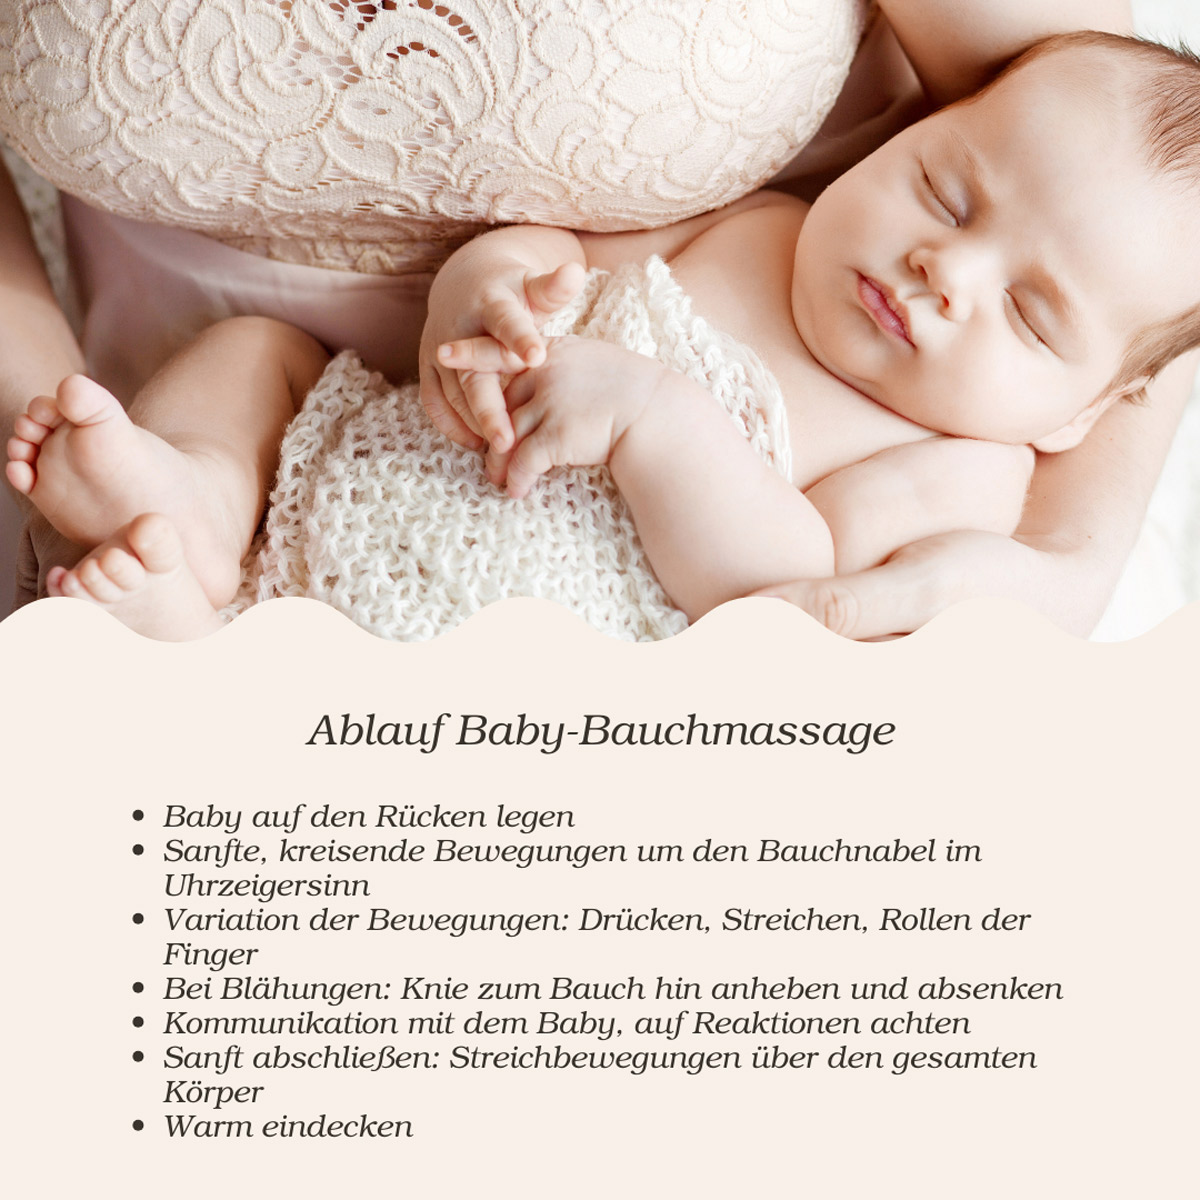 Baby Bauchmassage